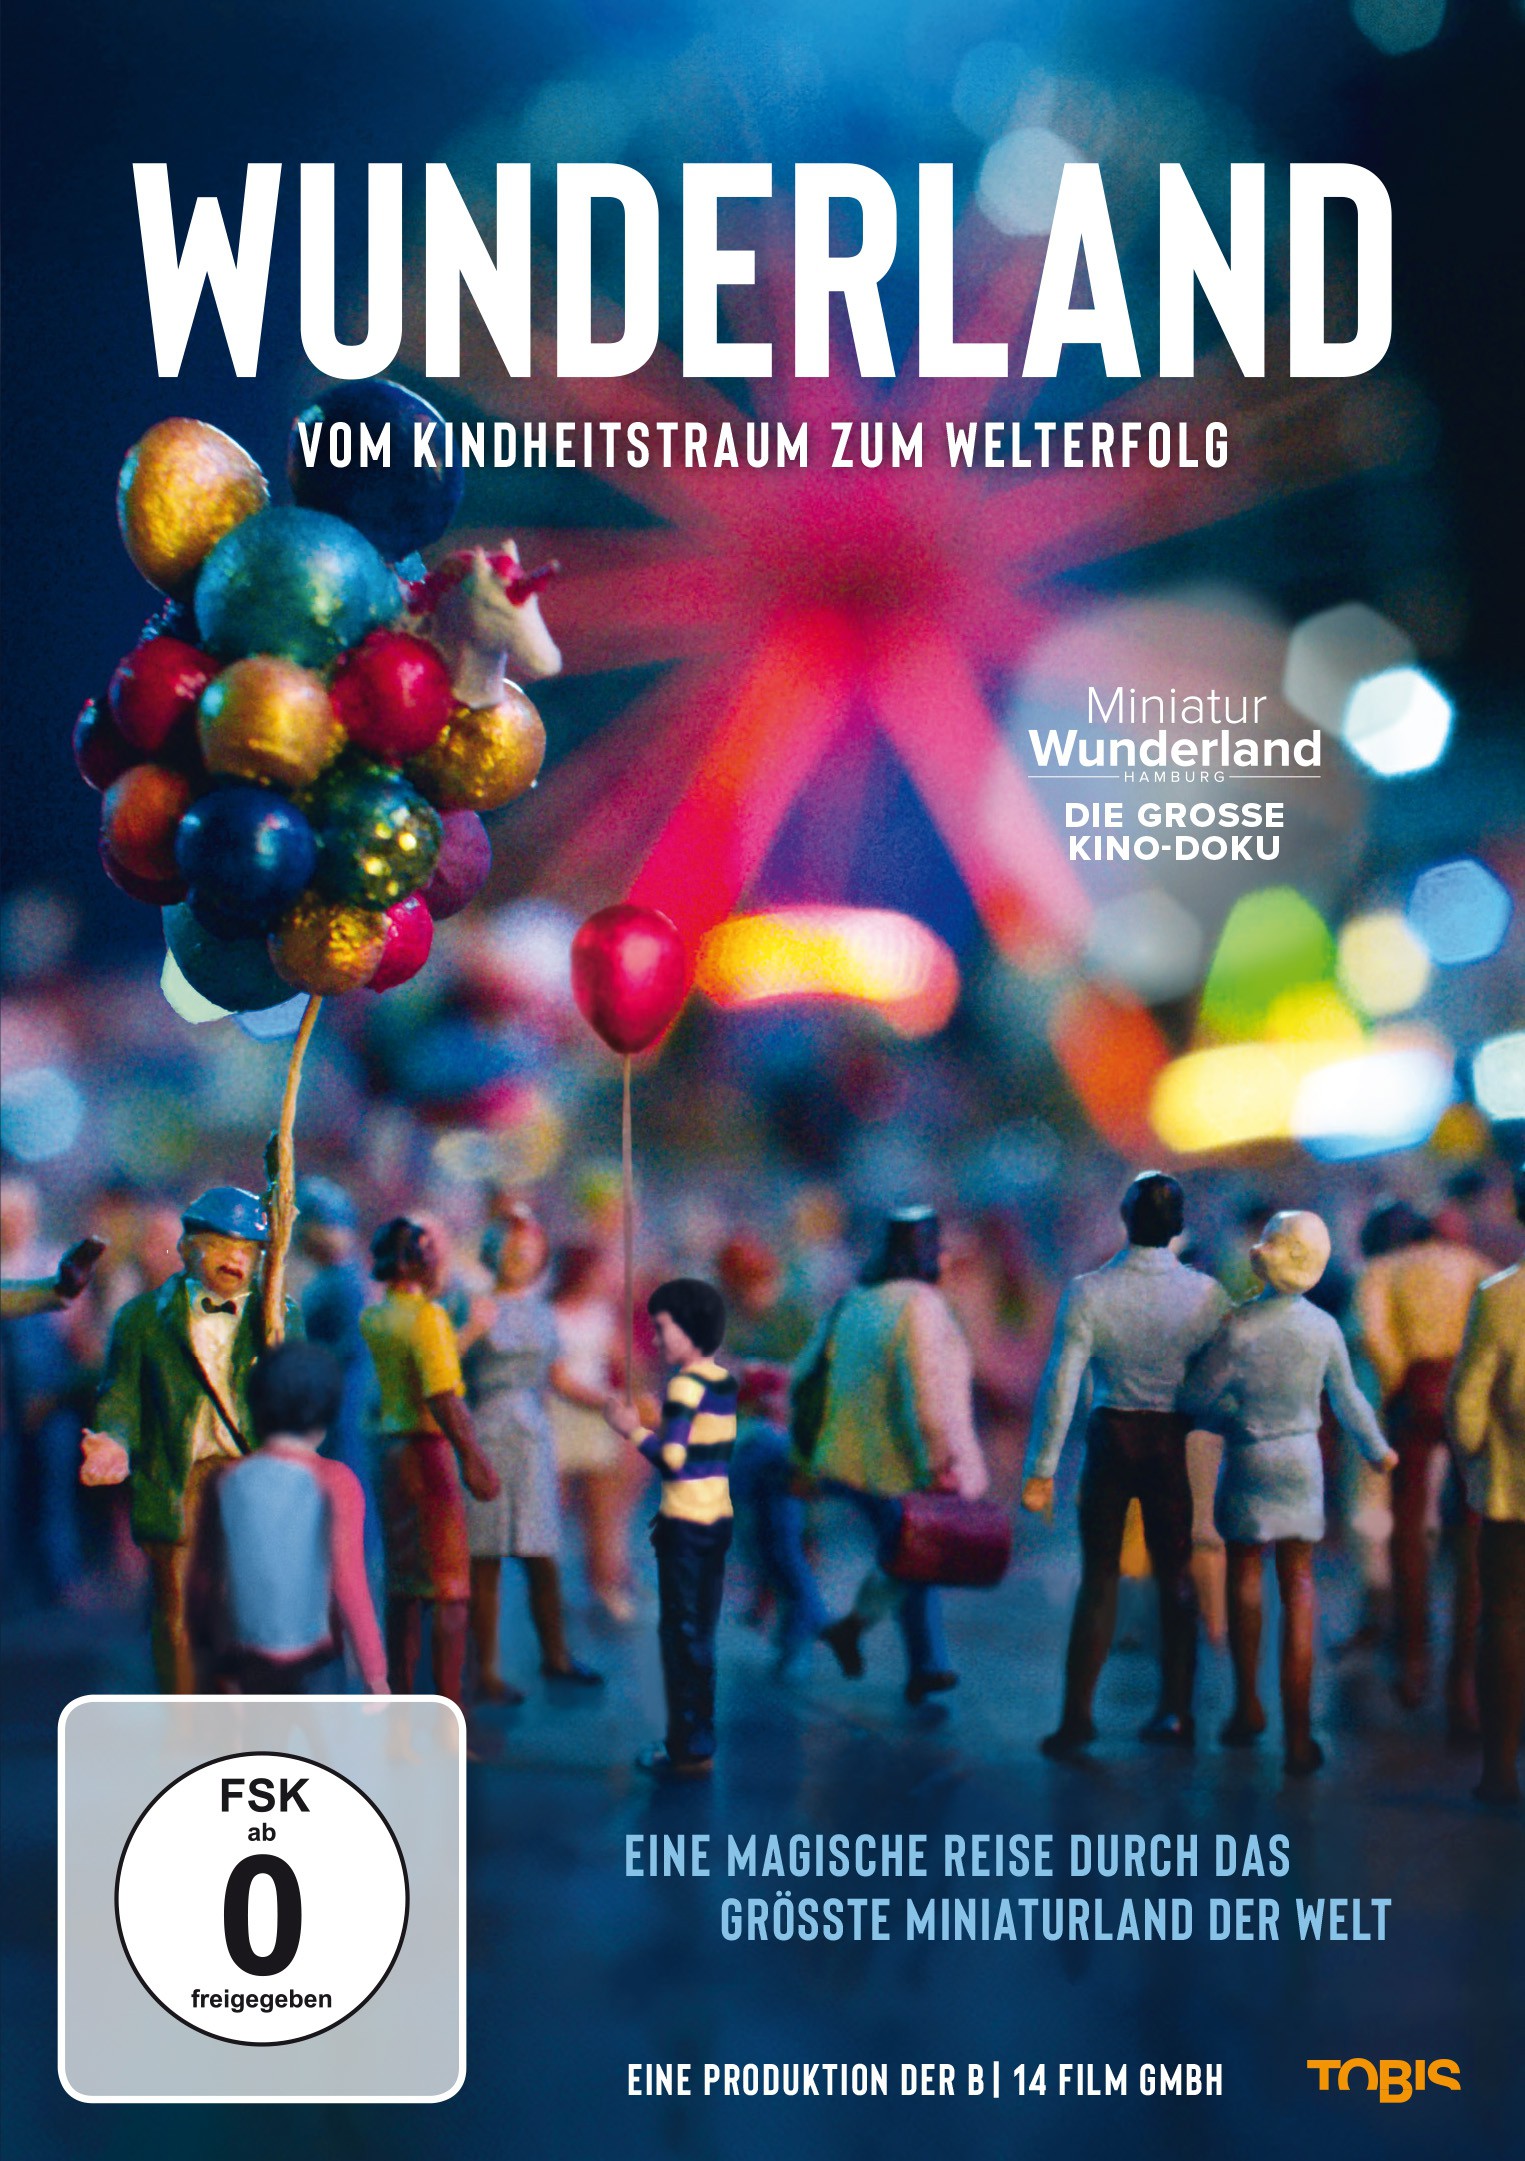 DVD WUNDERLAND - Vom Kindheitstraum zum Welterfolg. SIGNIERT